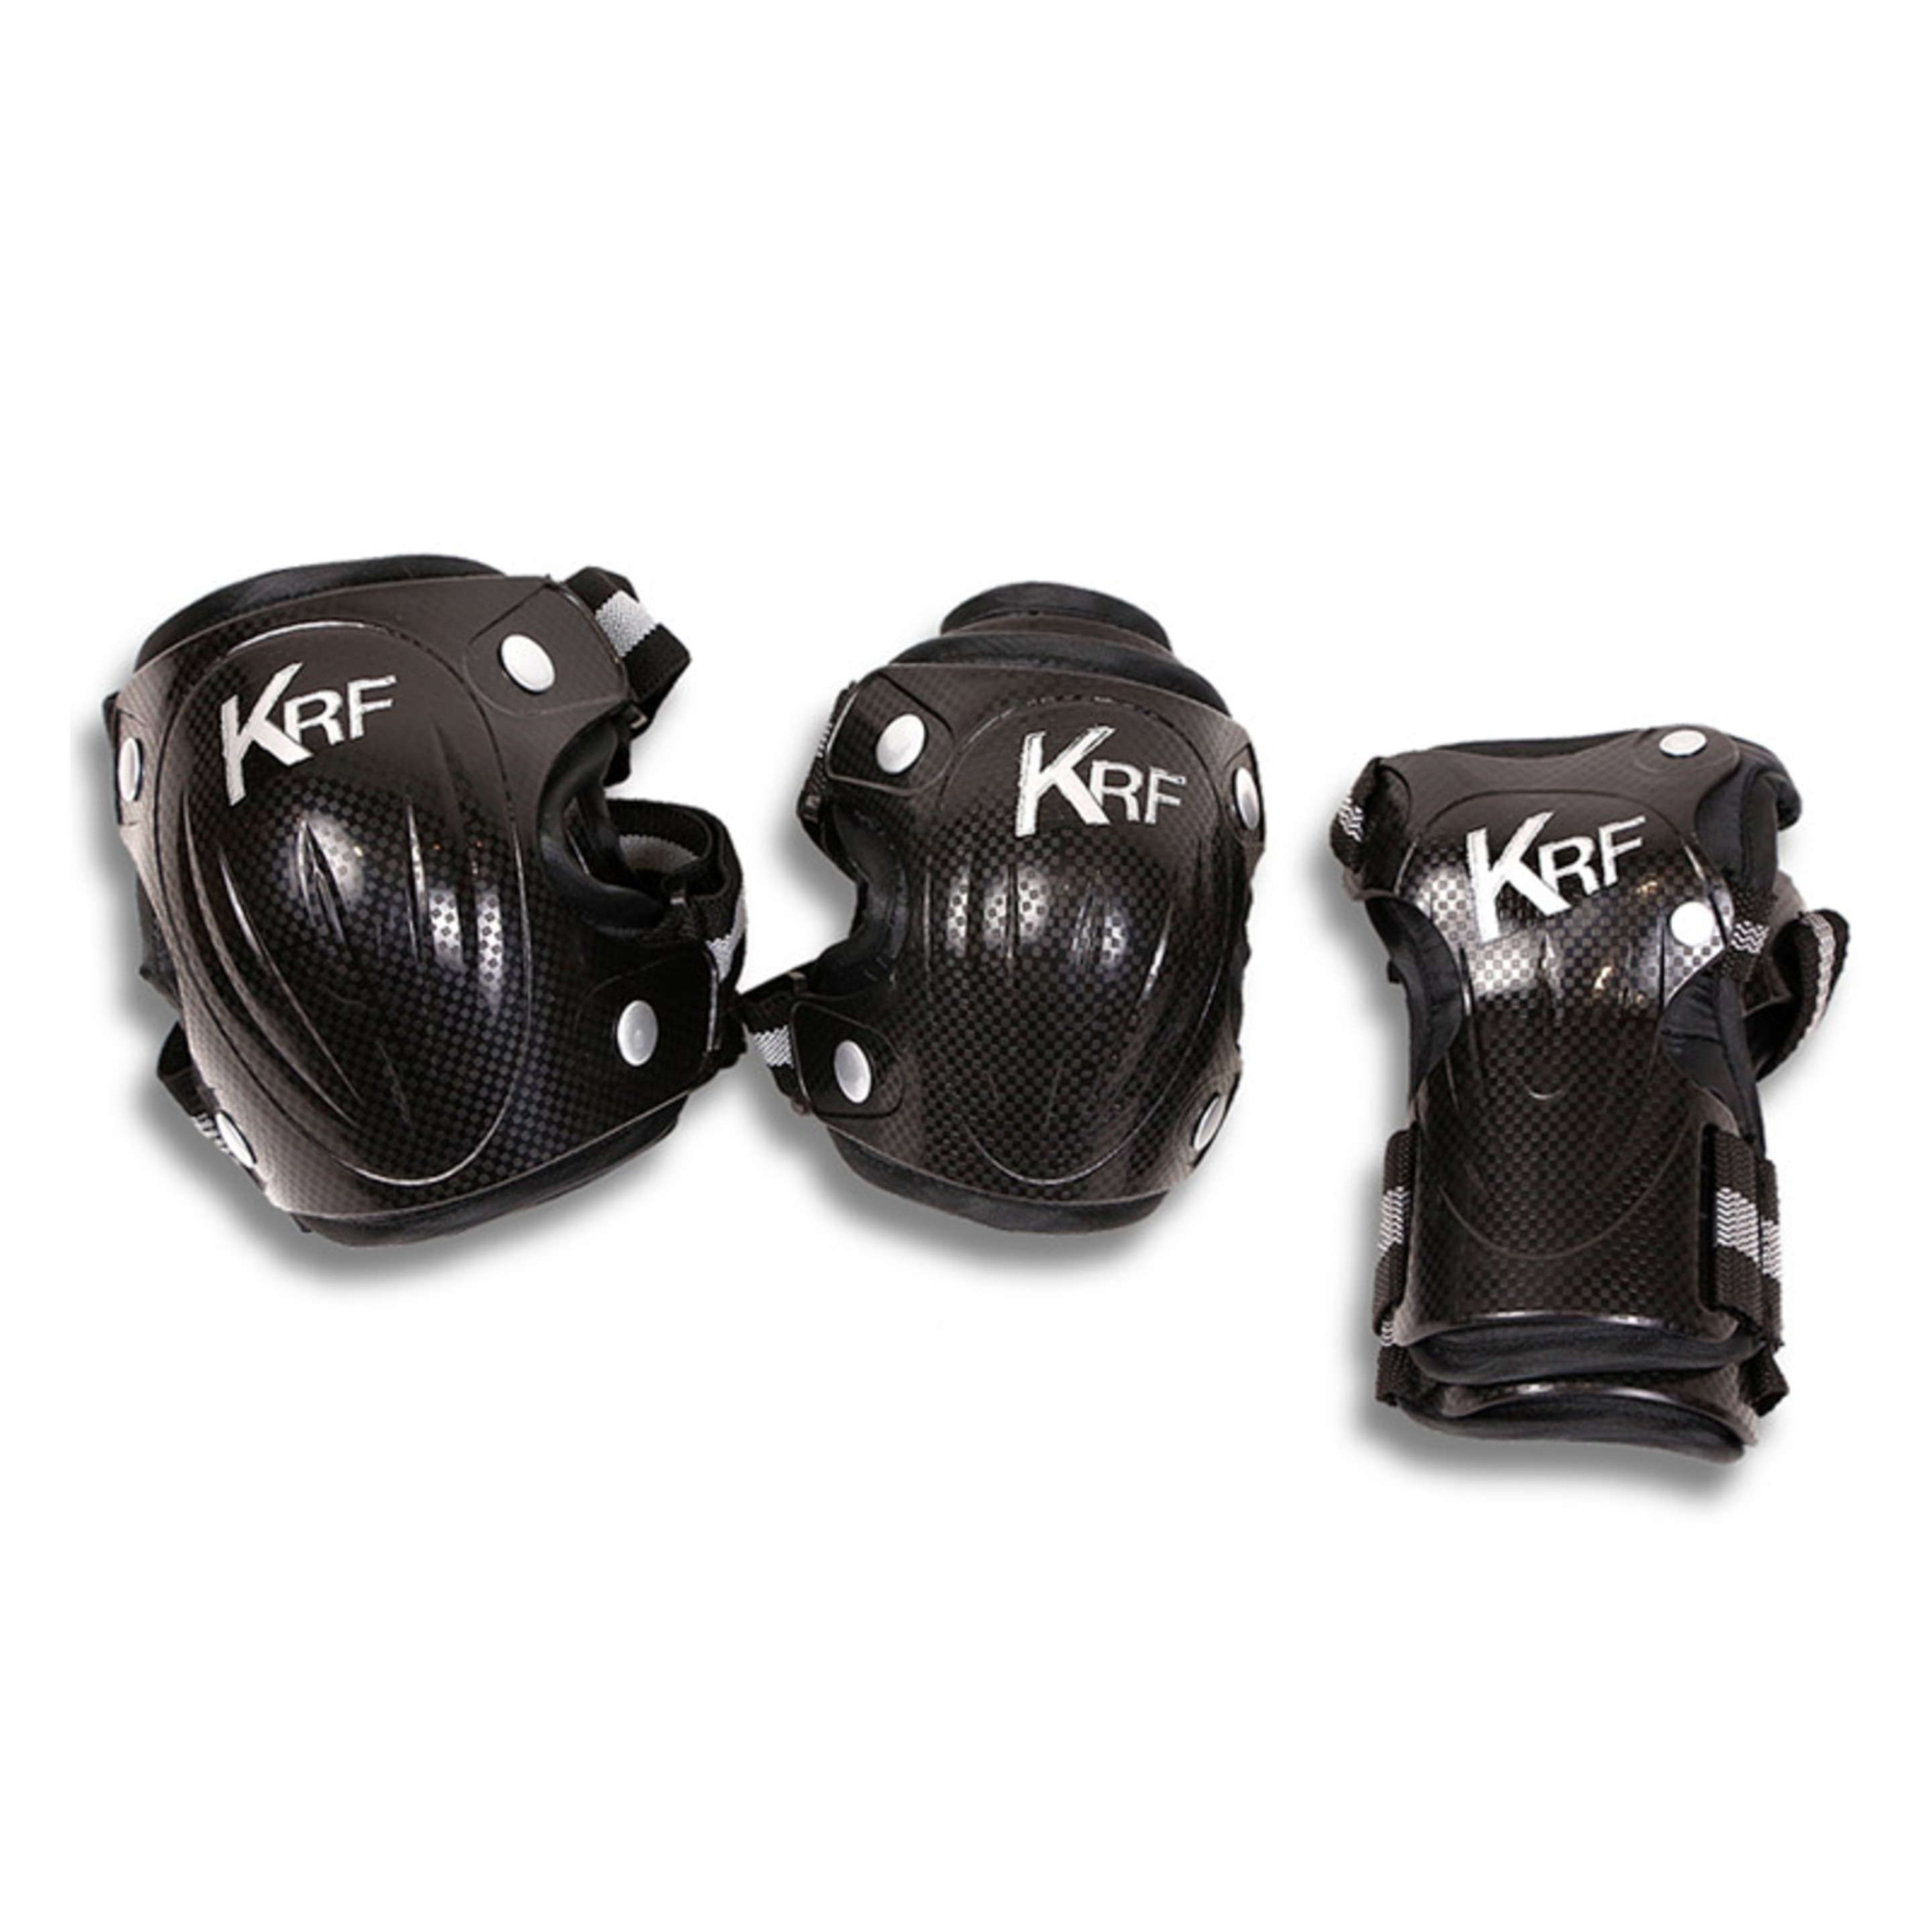 Krf Set De Protecciones High Fibra Coolmax Negro/gris